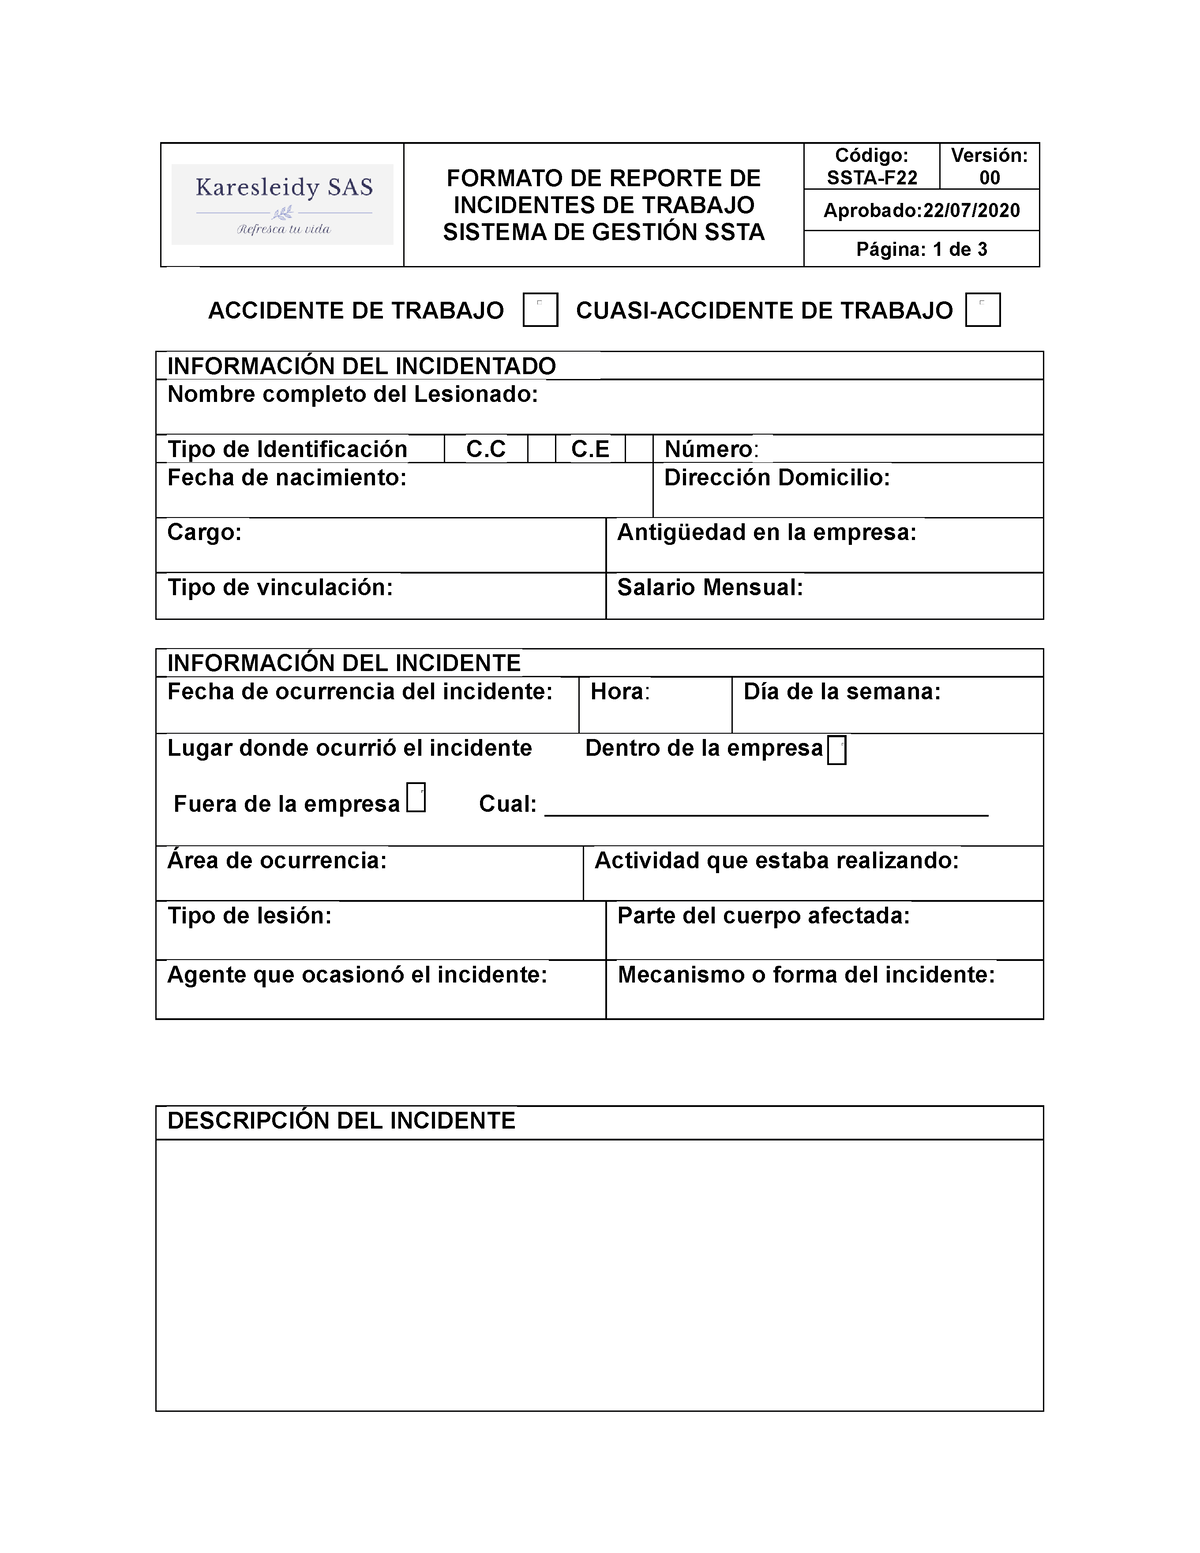 Formato Reporte de incidentes - FORMATO DE REPORTE DE INCIDENTES DE TRABAJO  SISTEMA DE GESTIÓN SSTA - Studocu